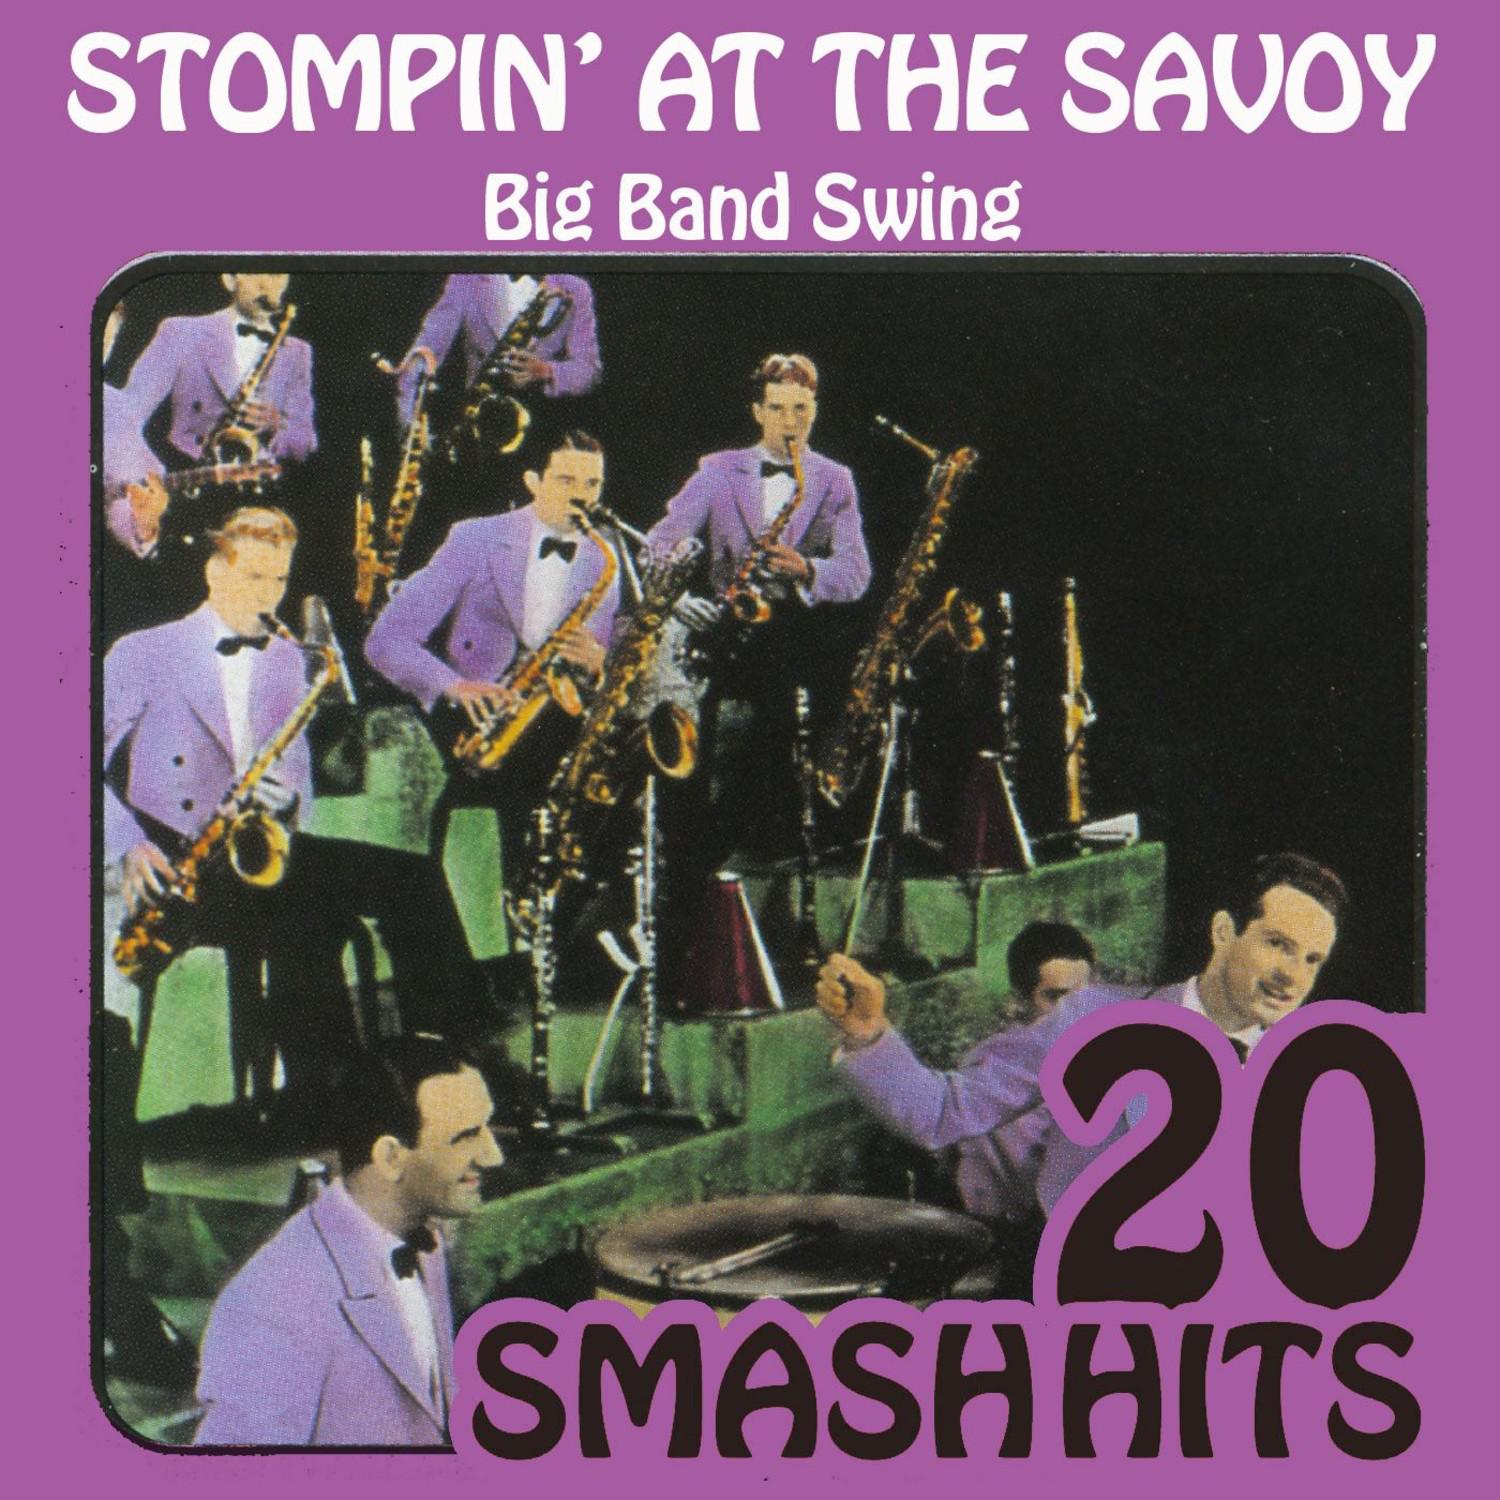 Big Band Swing - Stompin' At The Savoy